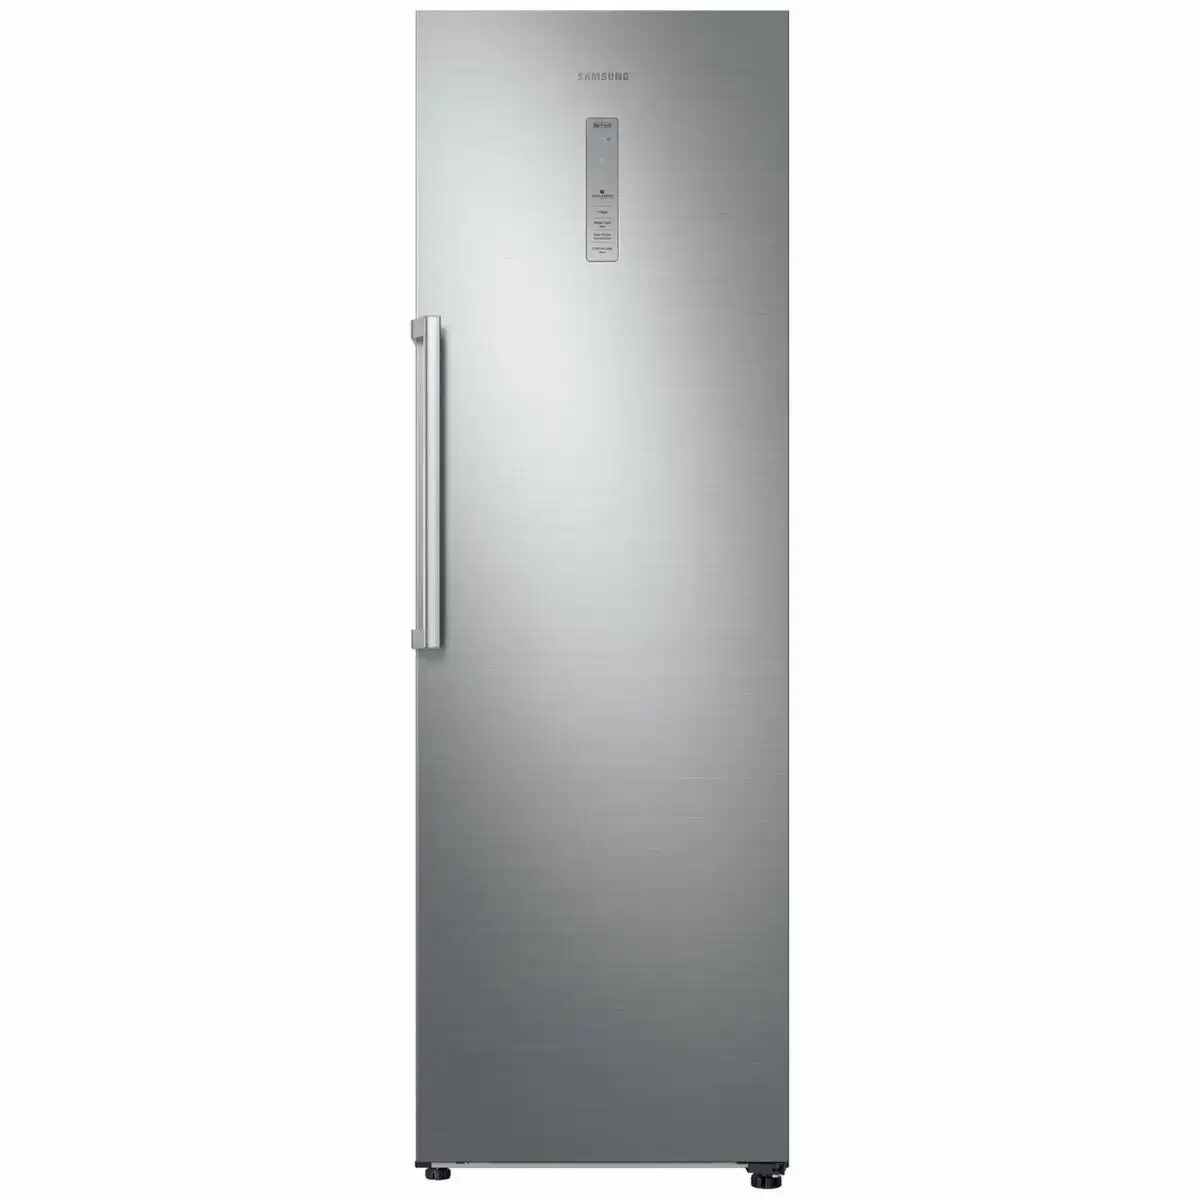 Samsung 387L Single Door Refrigerator Silver